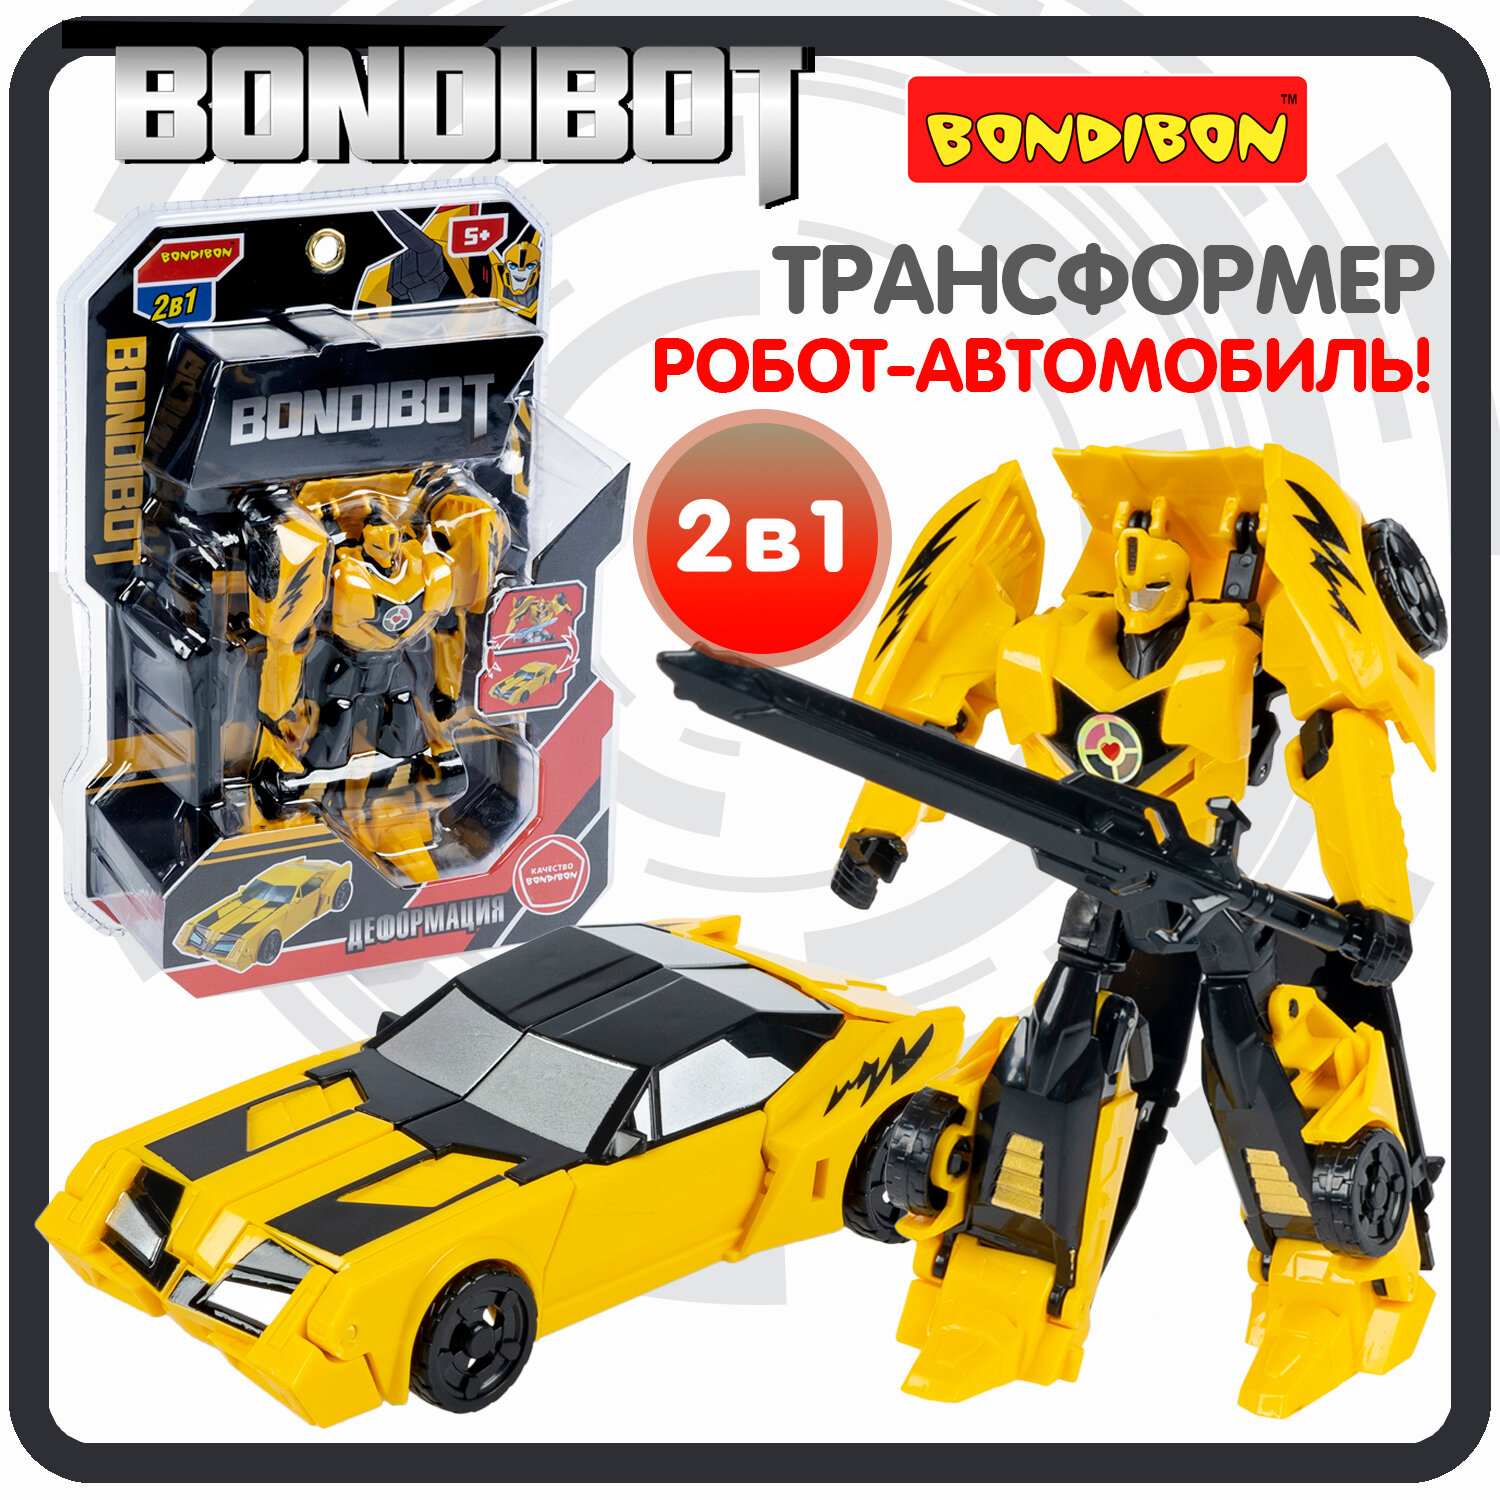 Робот-трансформер машинка BONDIBOT Bondibon игрушка для мальчиков, фигурка автомобиль, подарок для детей